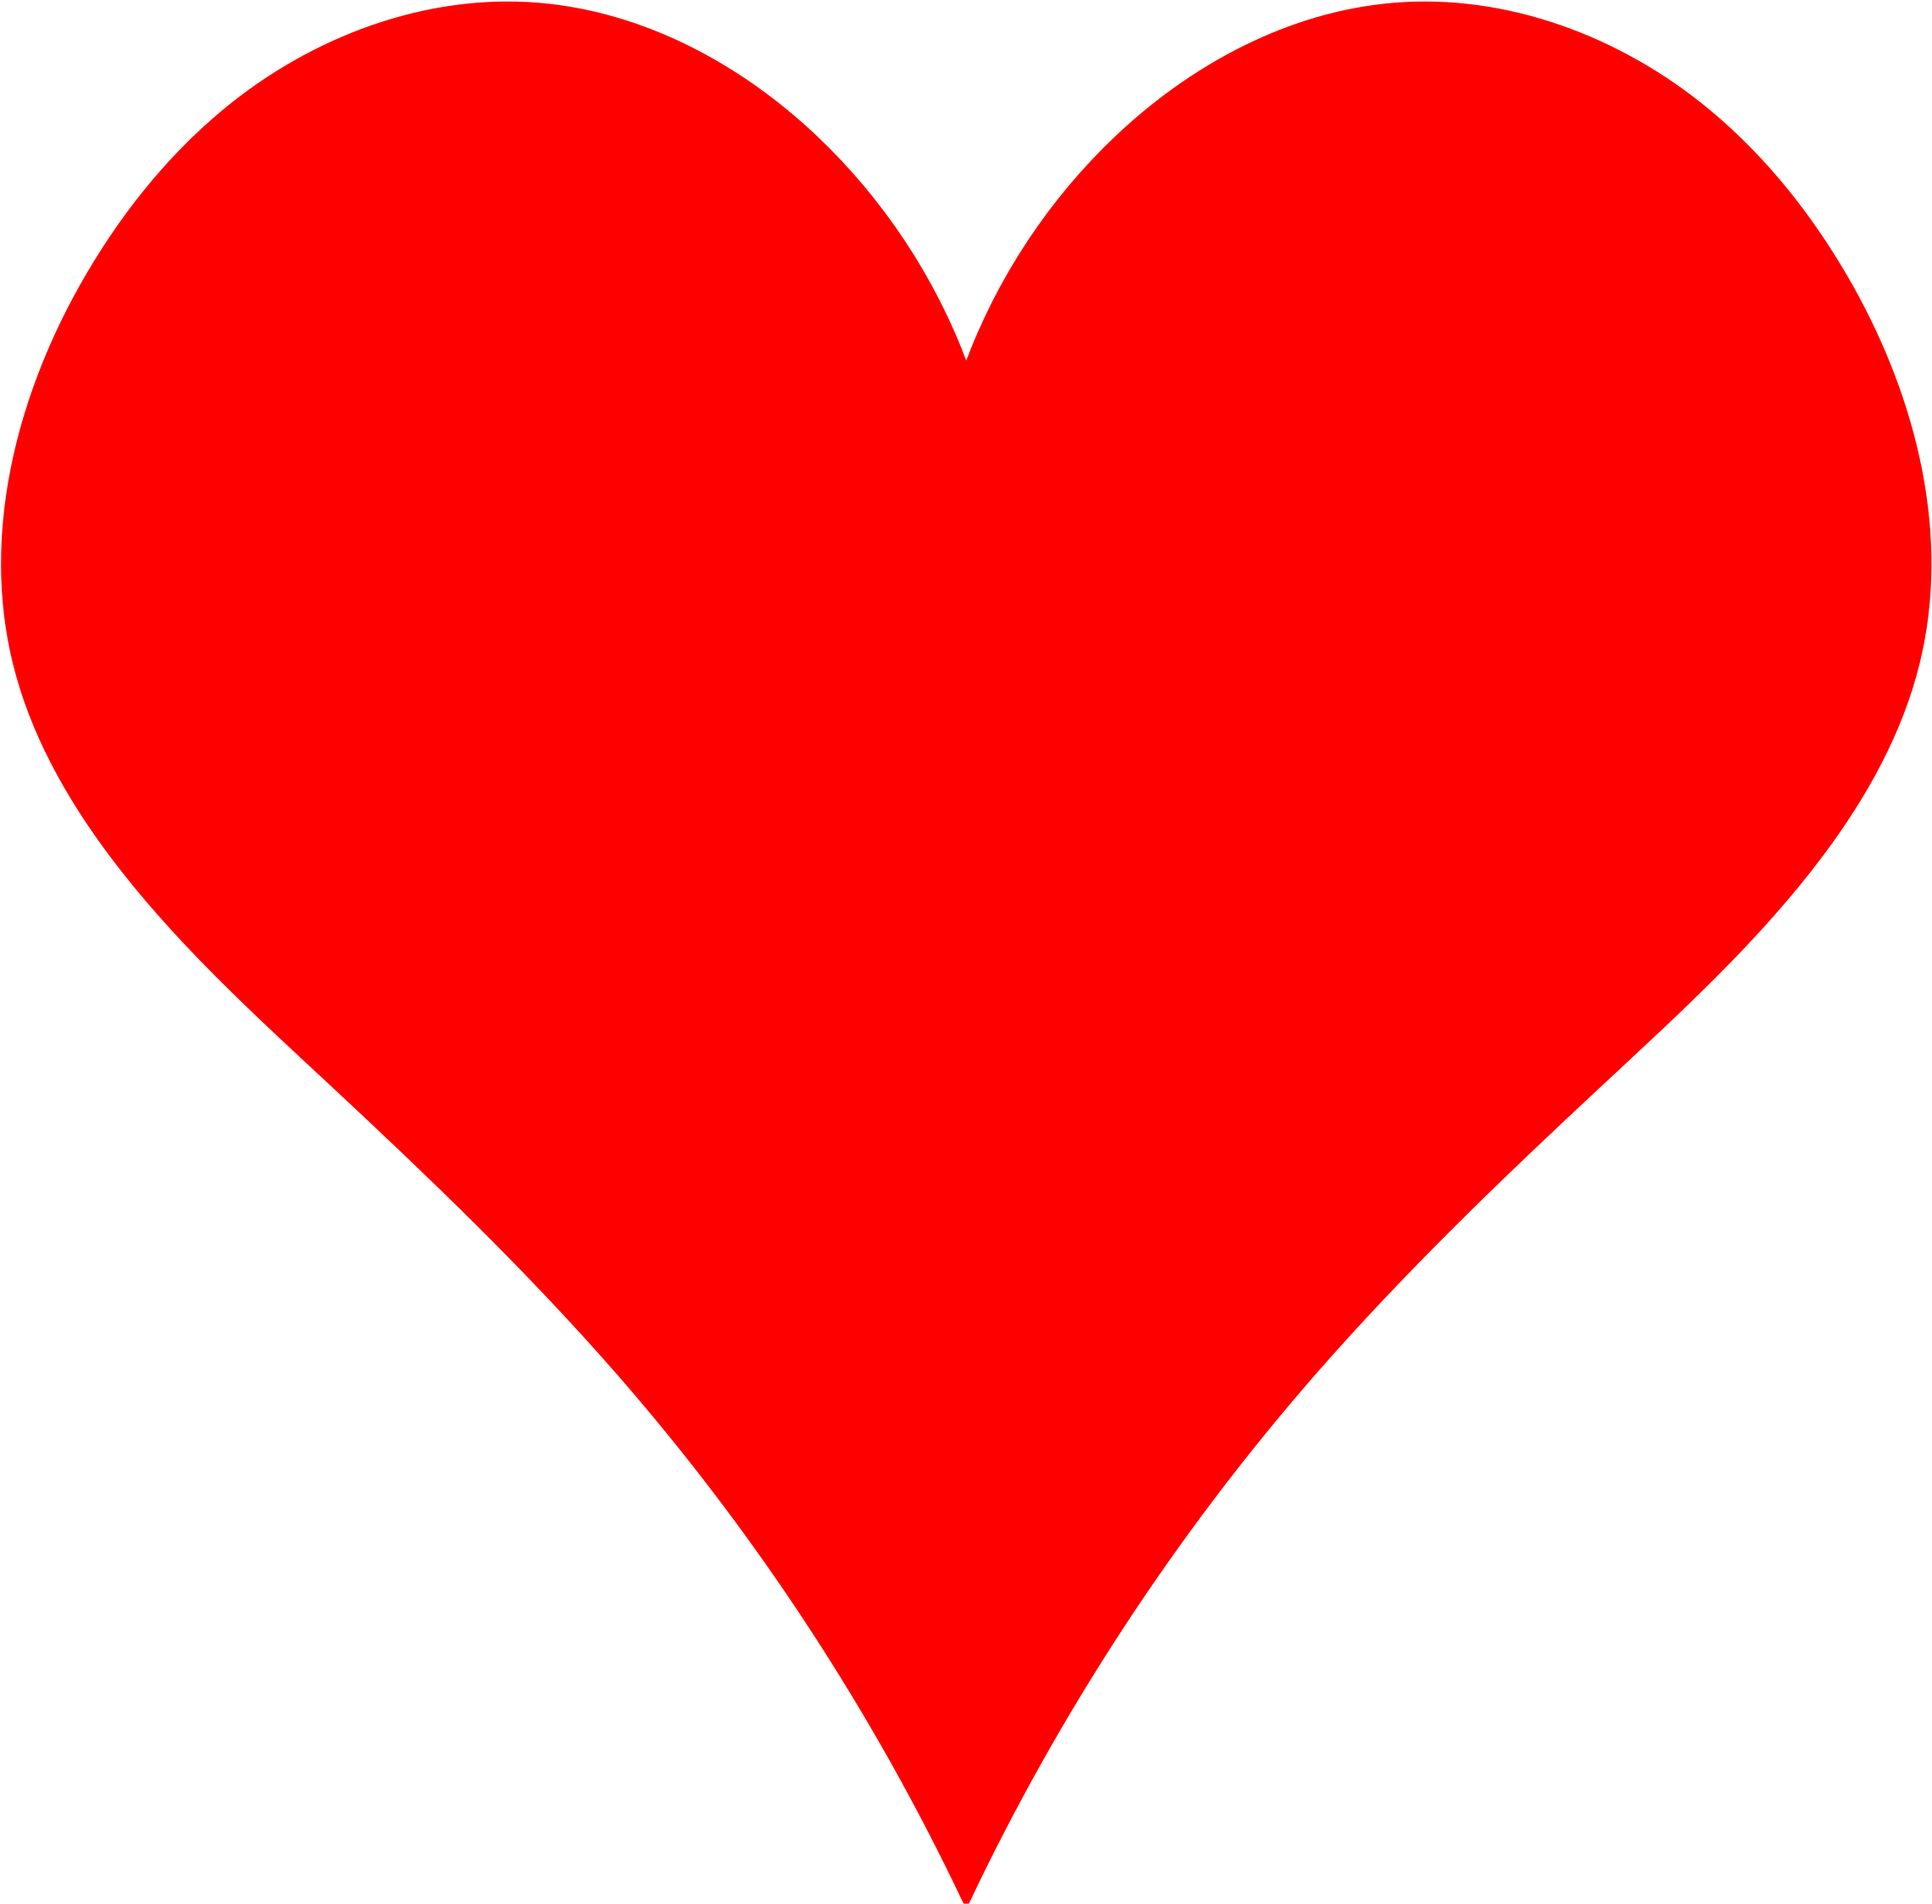 Plain Red Heart Shape By Gr8dan - Love Heart (2400x2400)